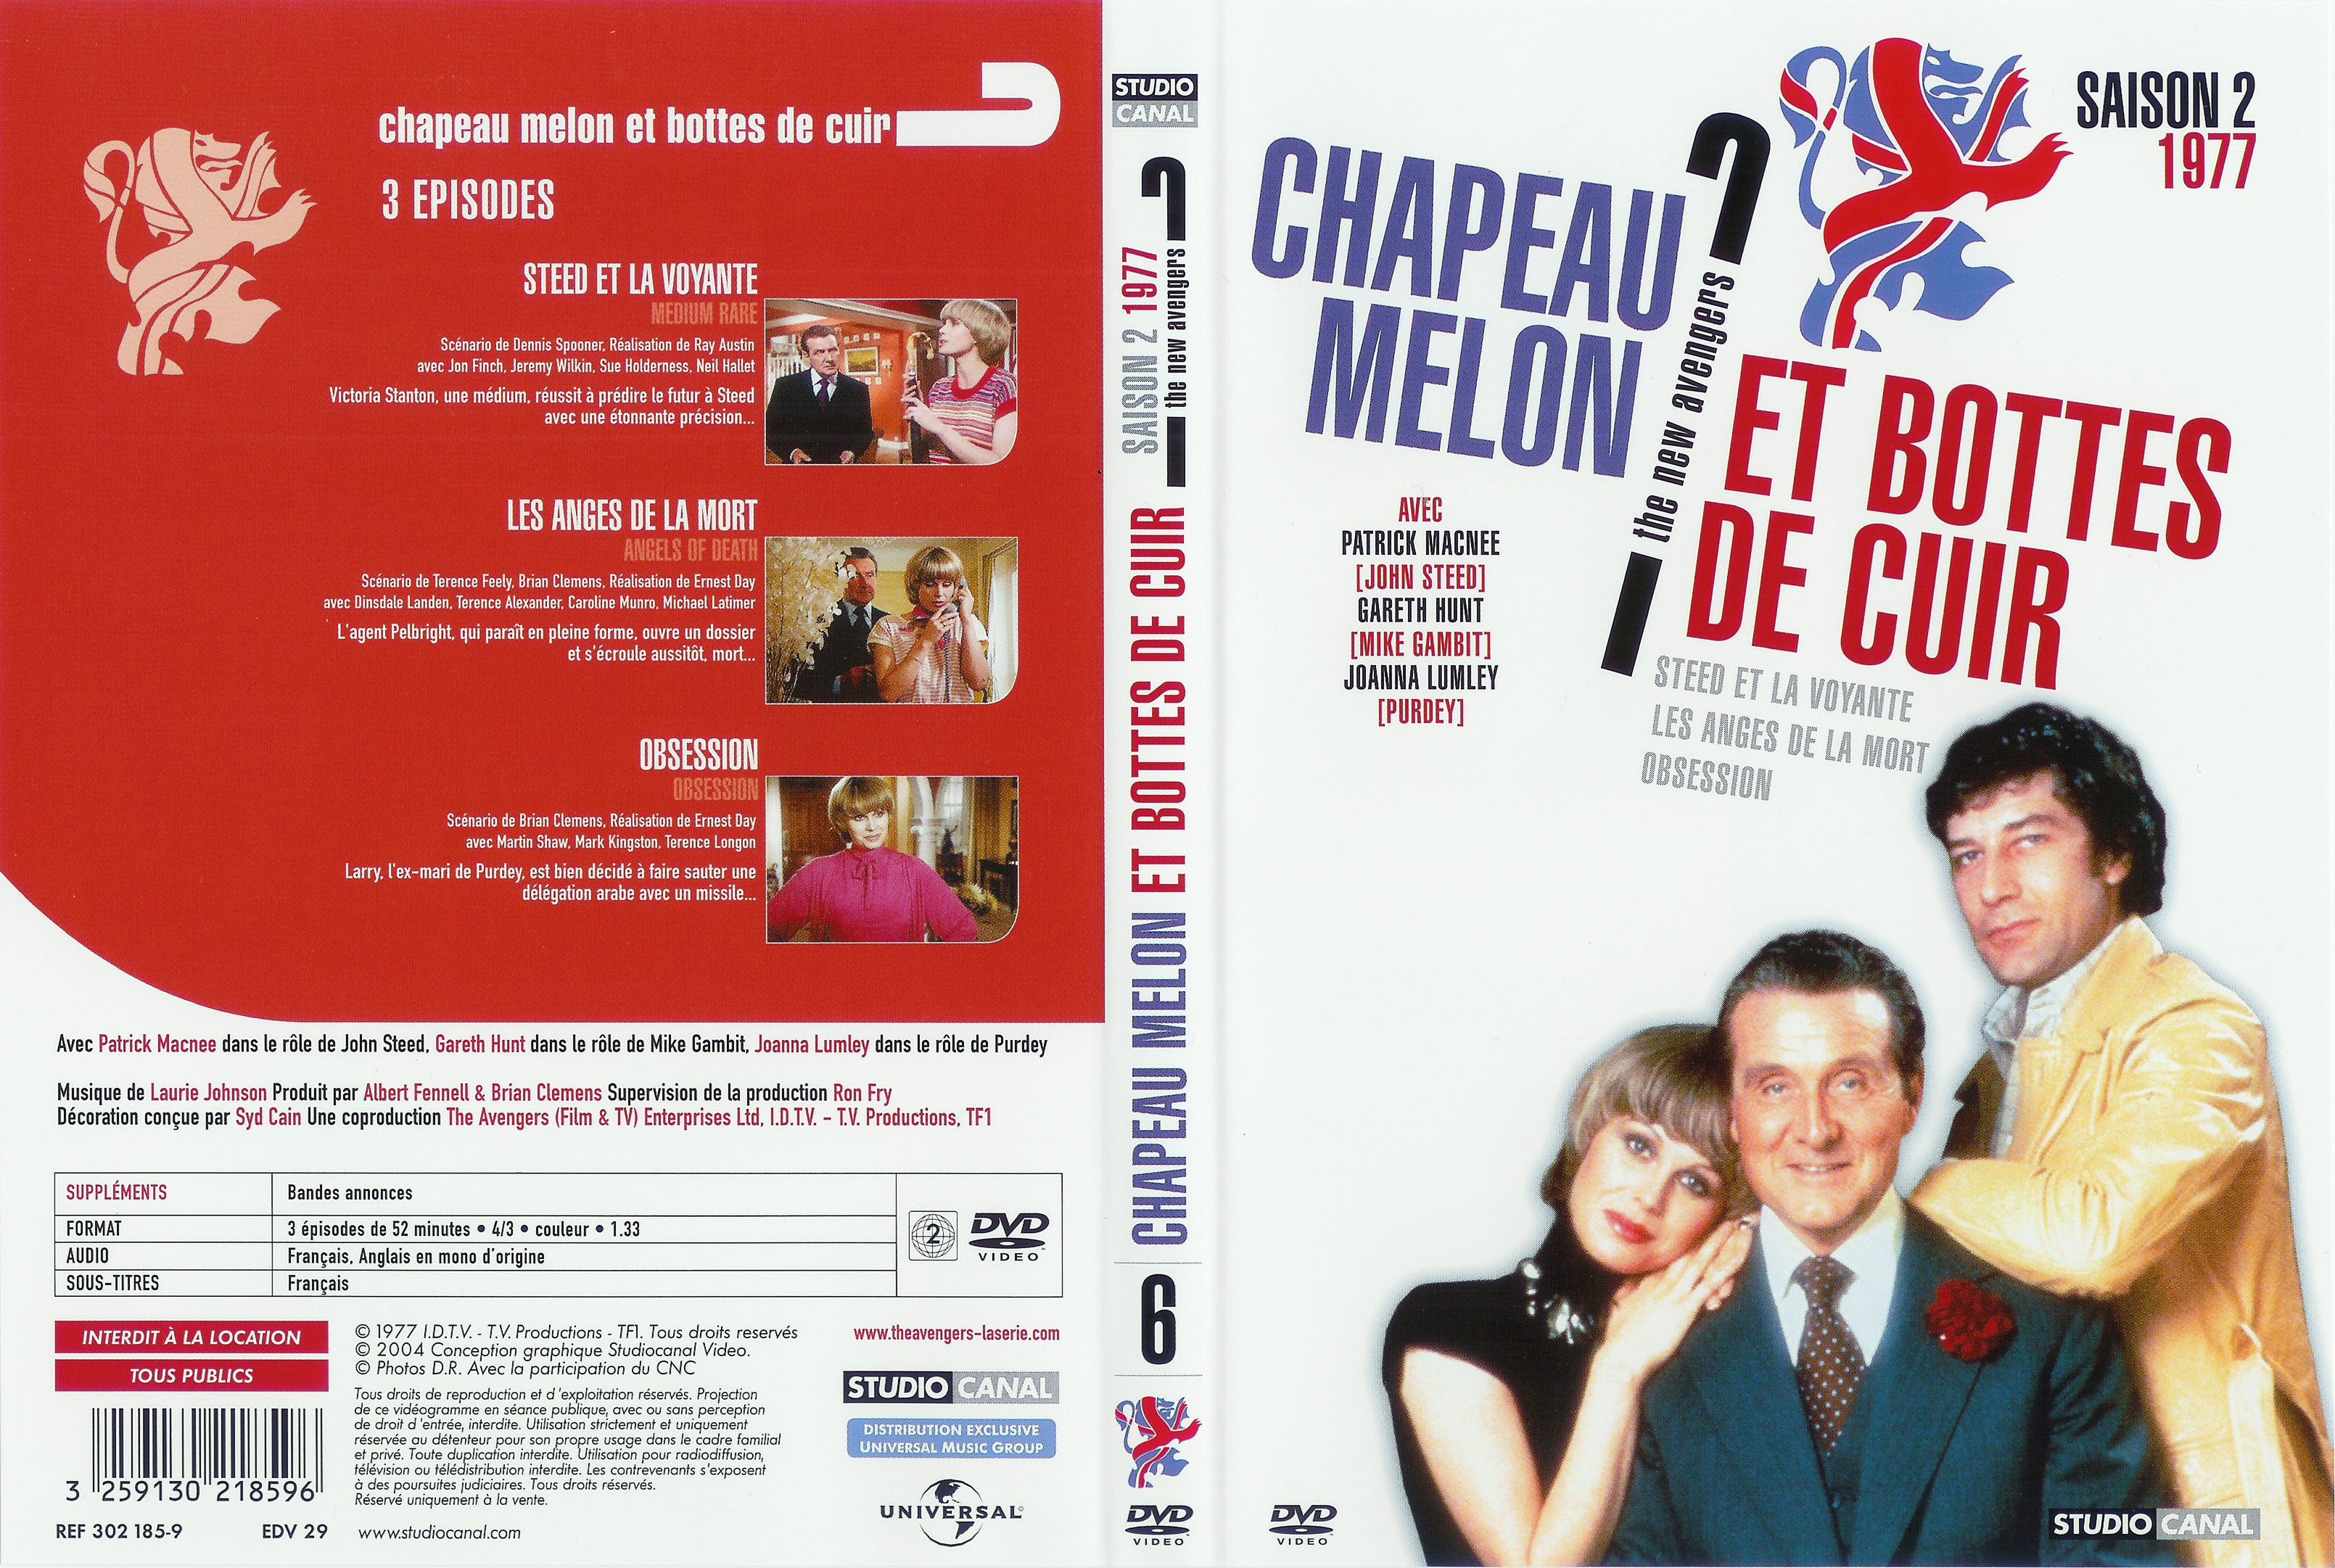 Jaquette DVD Chapeau melon et bottes de cuir 1977 vol 2